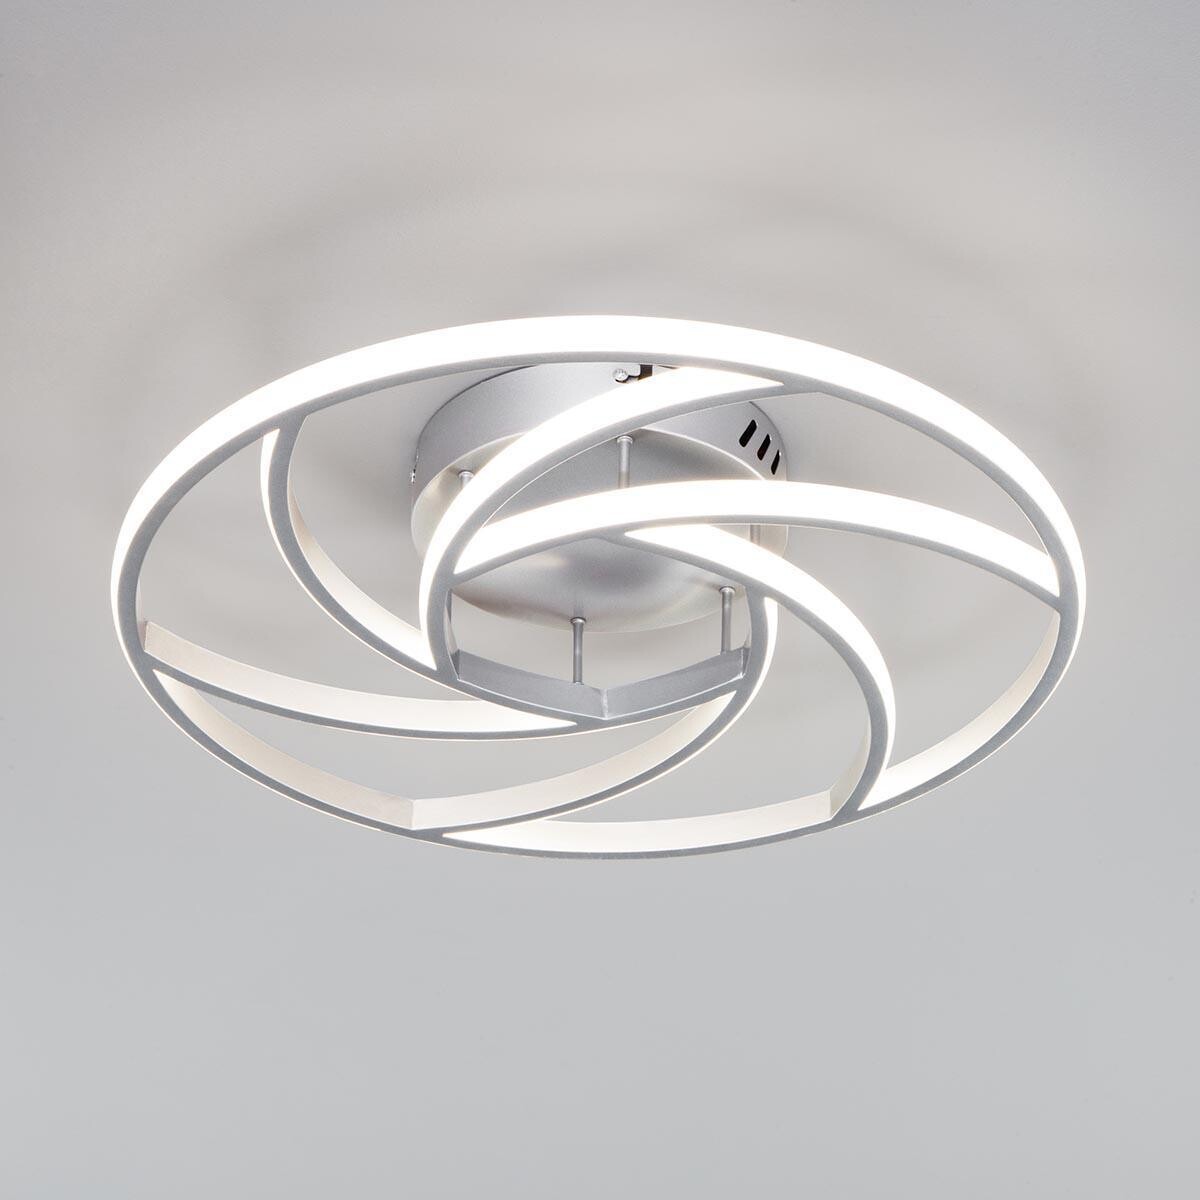 Светильник потолочный светодиодный серебряный Indio 90207-1 серебро